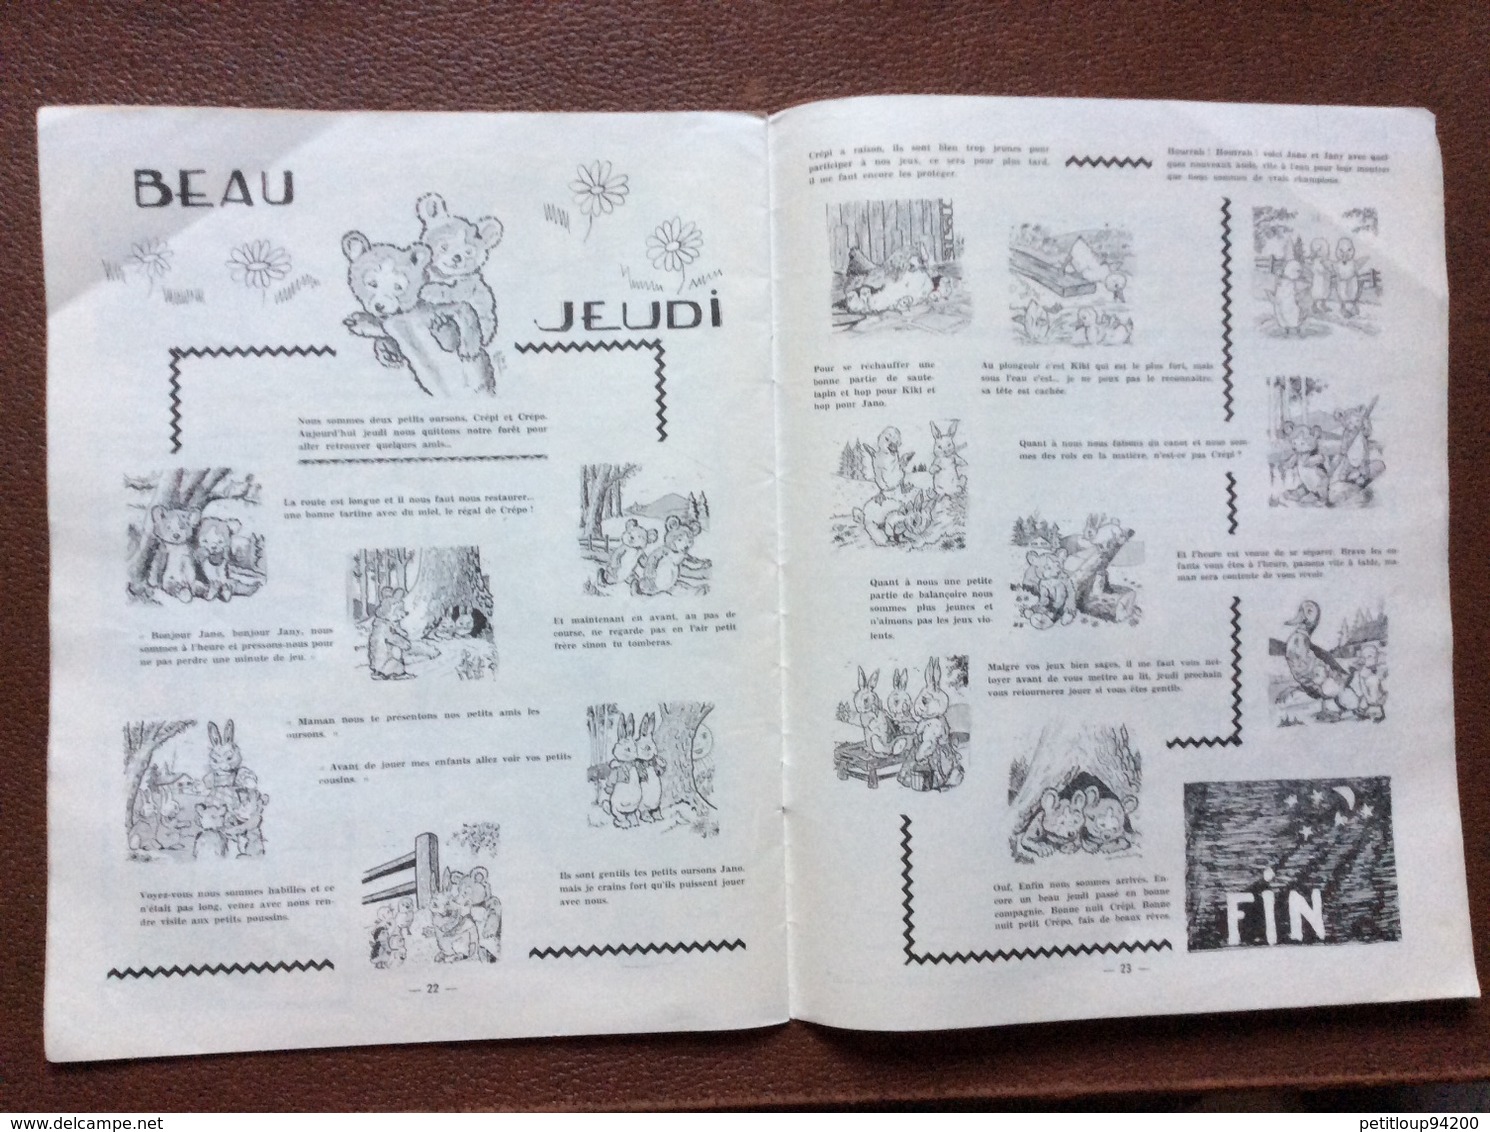 PROGRAMME  C.A.S. de PARIS  Fête Centrale  CHAPITEAU DES FRÈRES BOUGLIONE  Arbre de Noel 1958